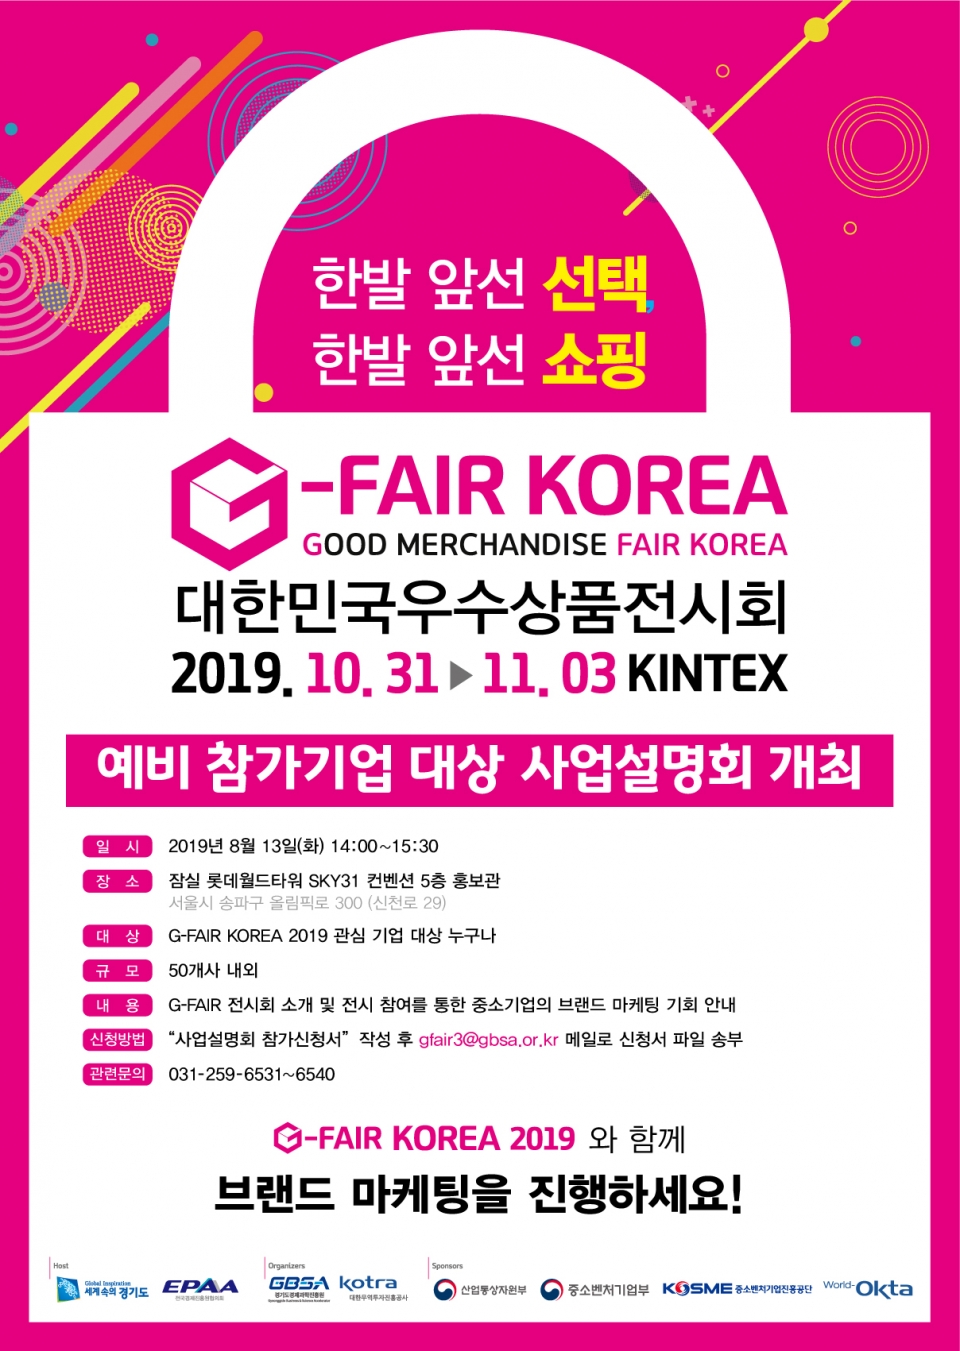 G-FAIR KOREA 2019 포스터 (출처: 경기도경제과학진흥원)